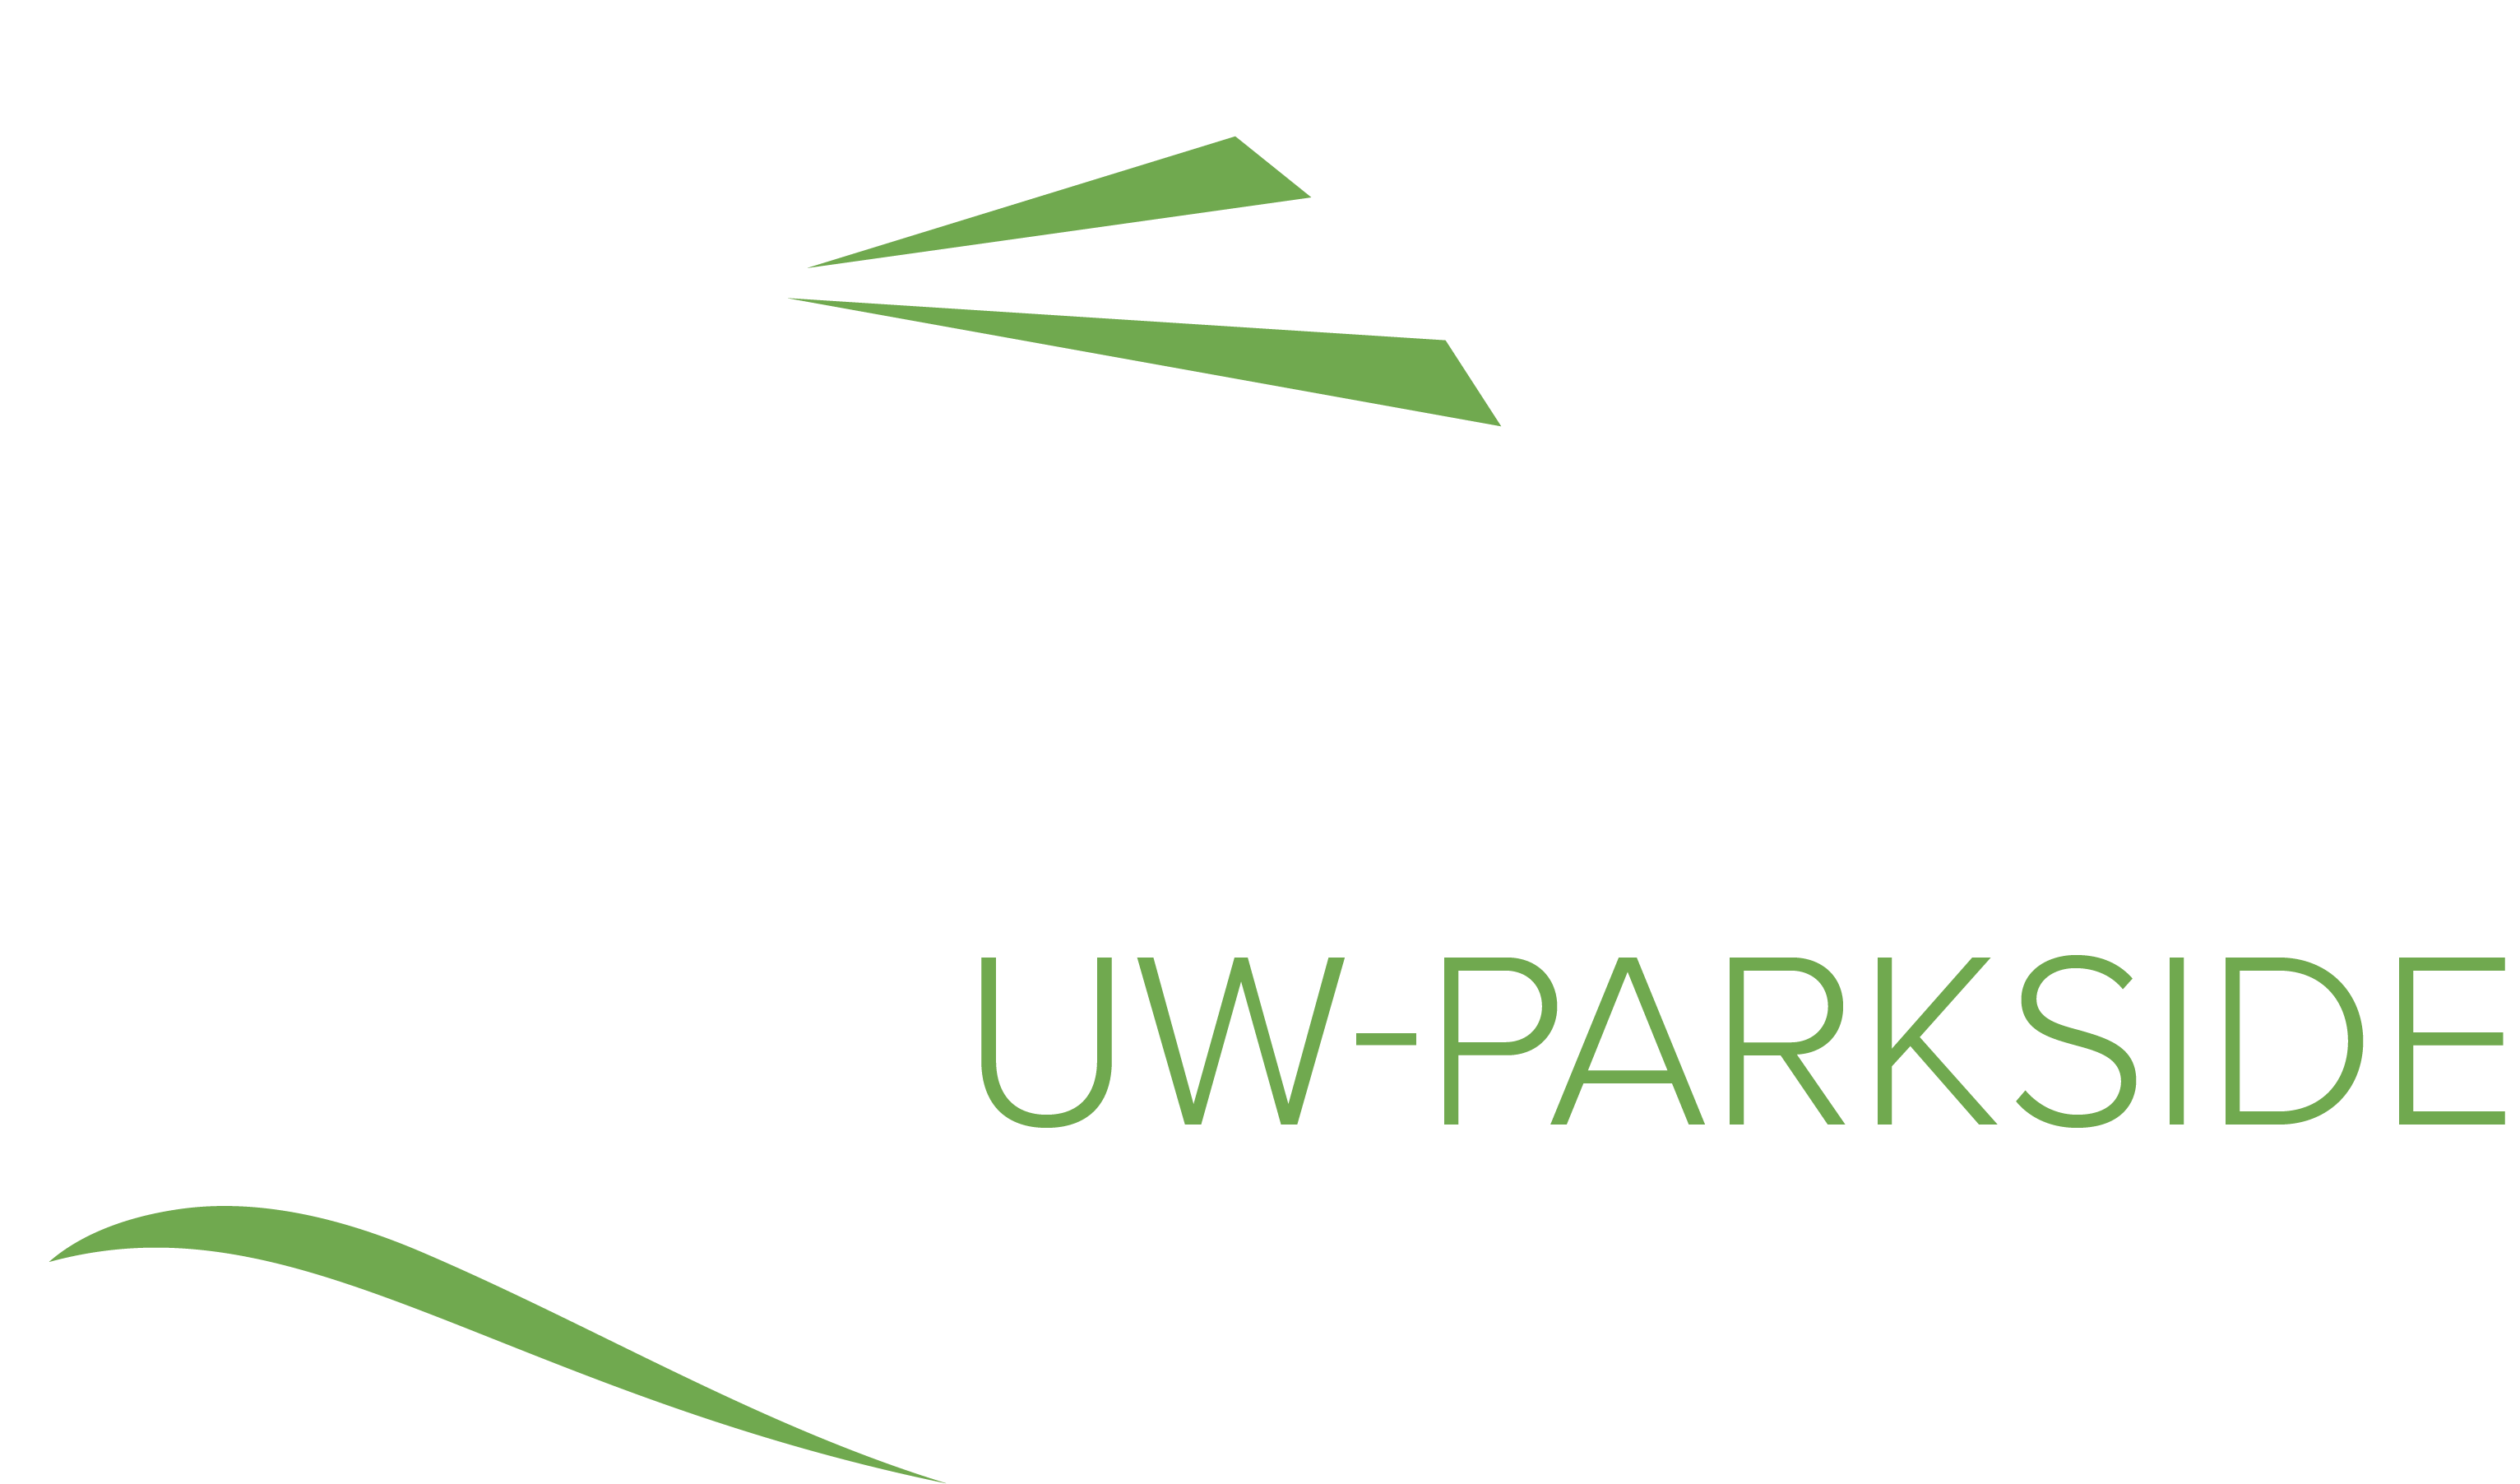 Navigate Parkside